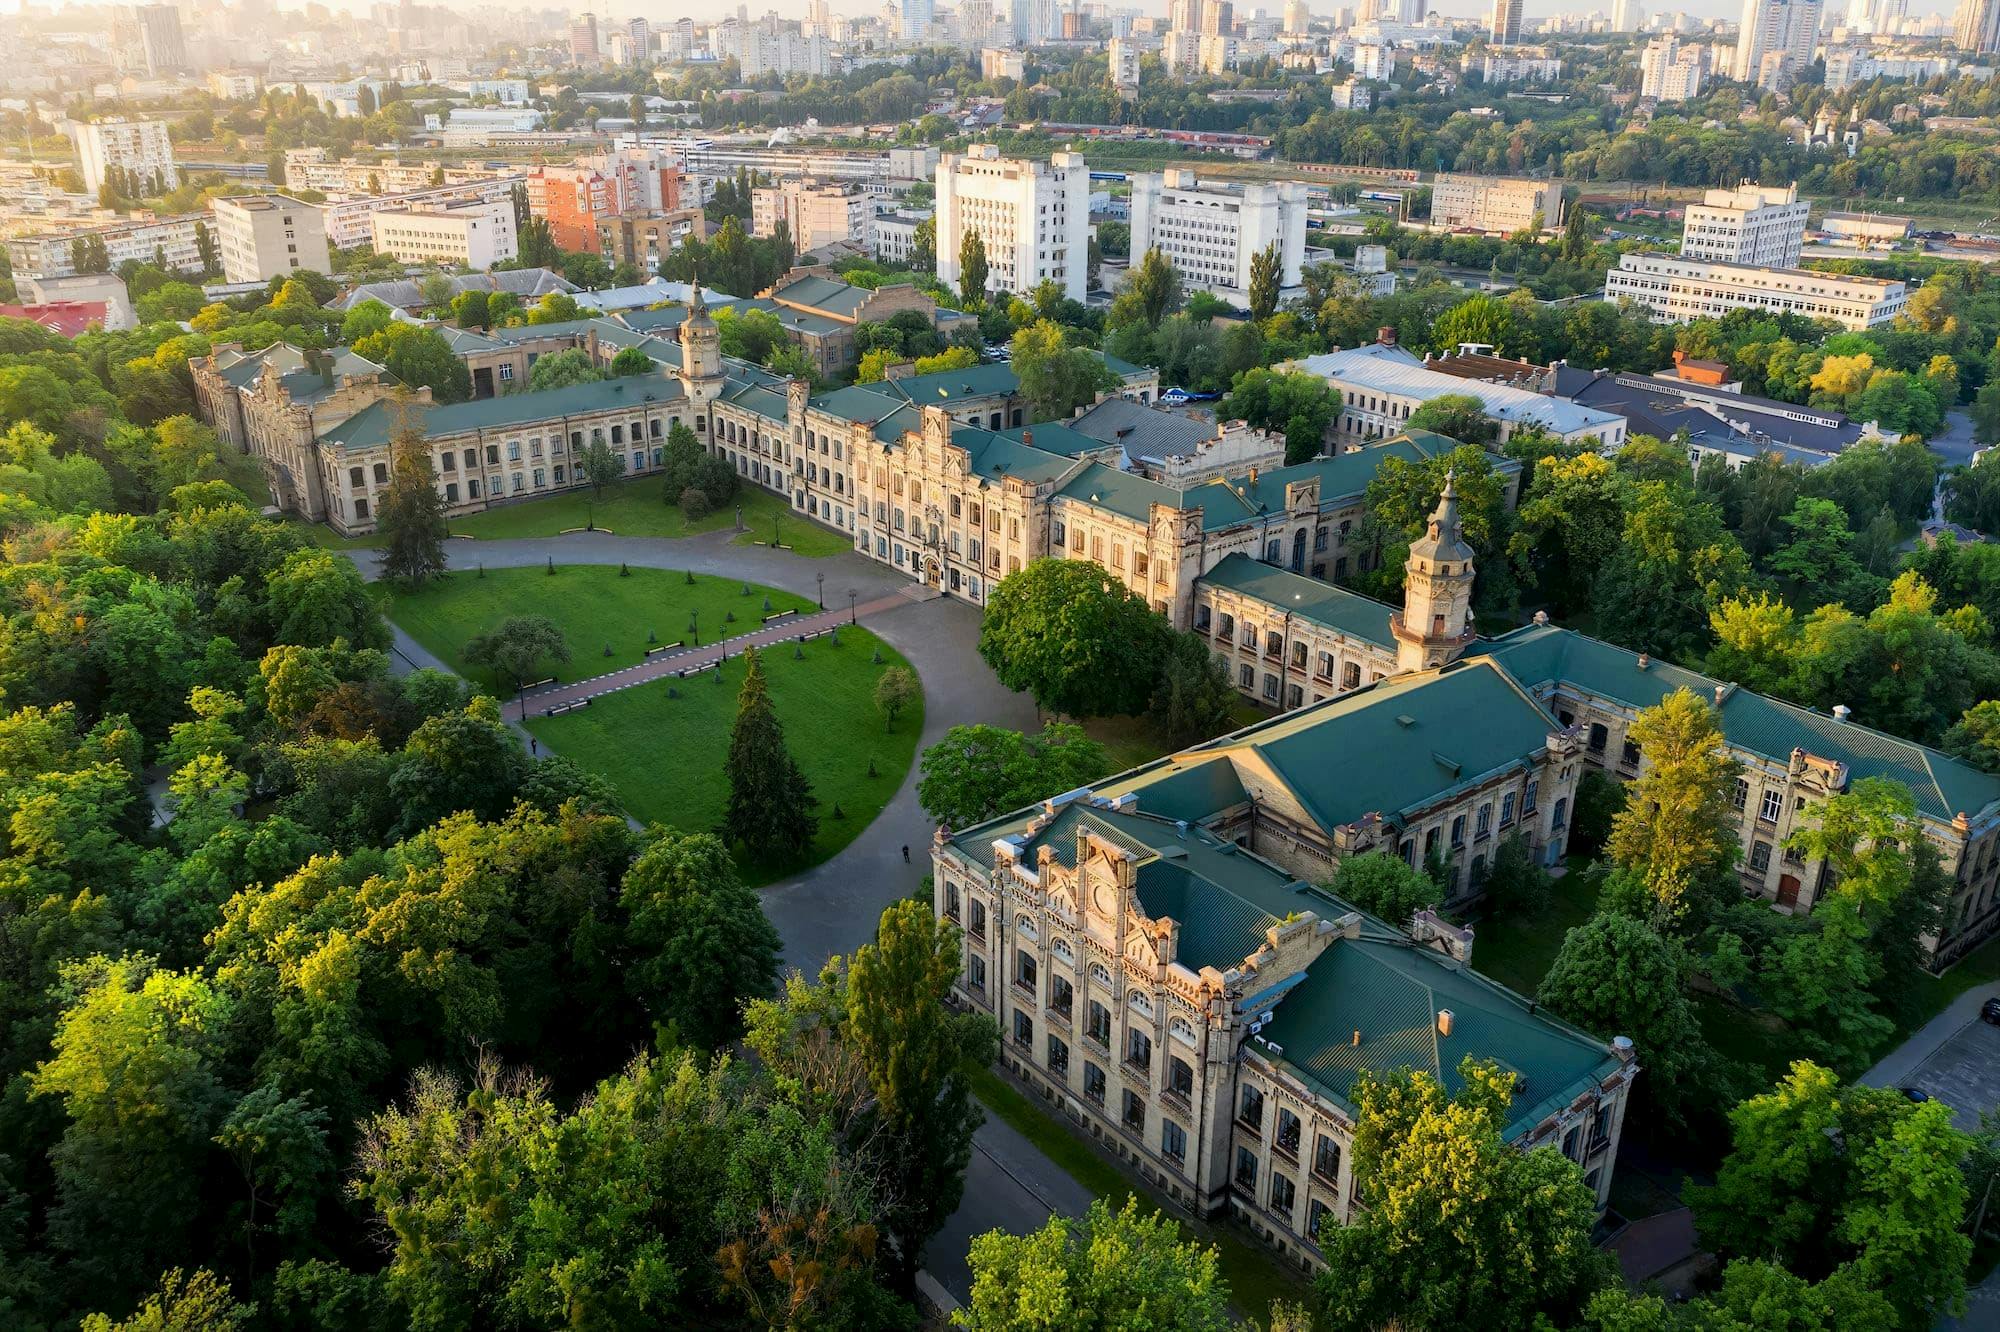 Kiev Politechnical Institute